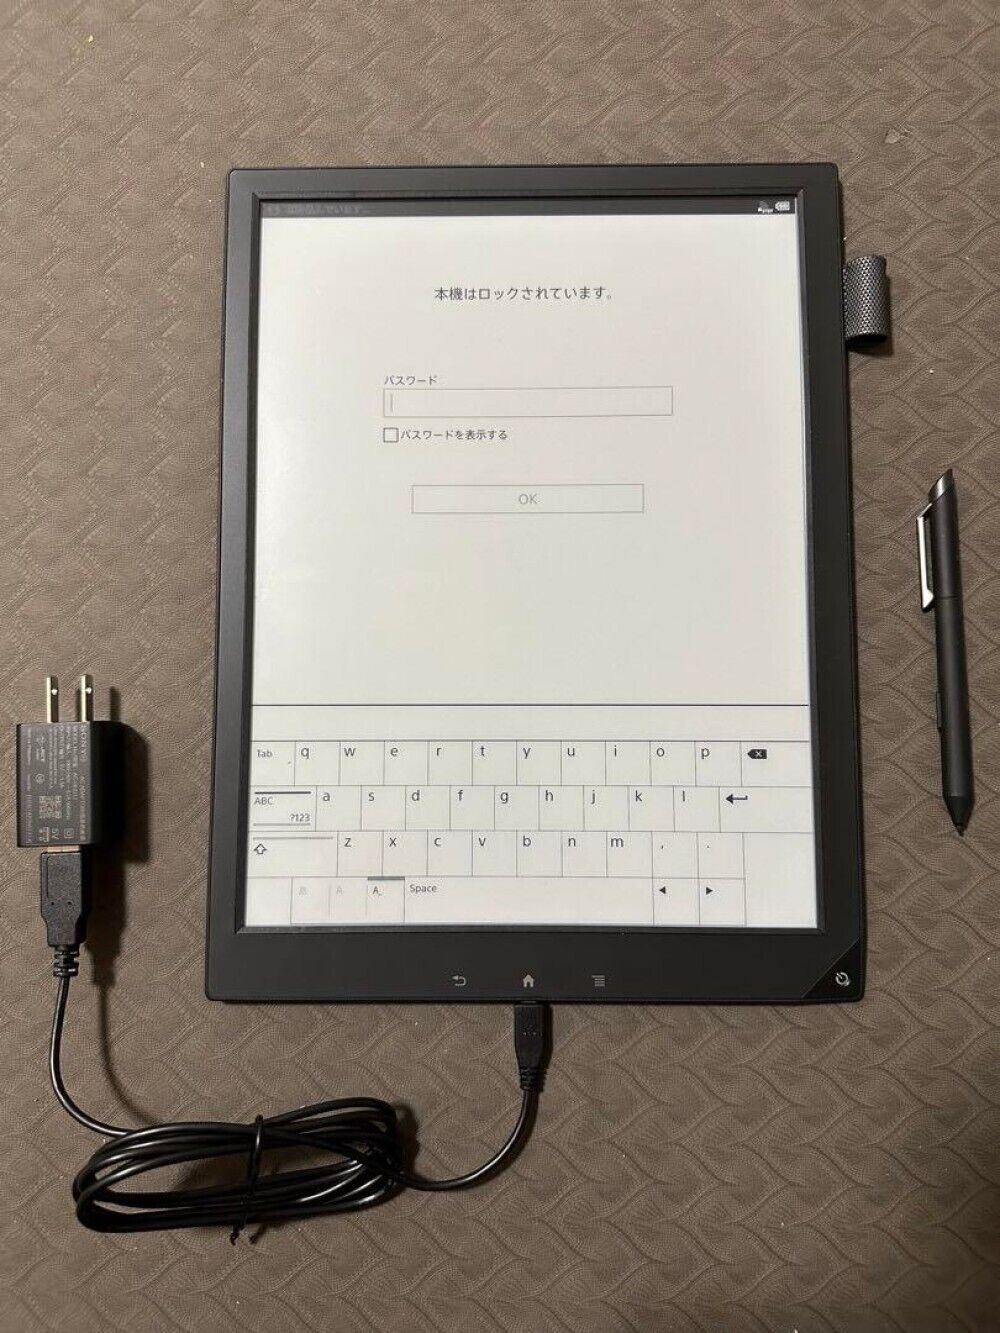 Sony Model DPT-S1 Digital Paper System Tablet 13.3 in Wi fi w/stylus pen JUNK